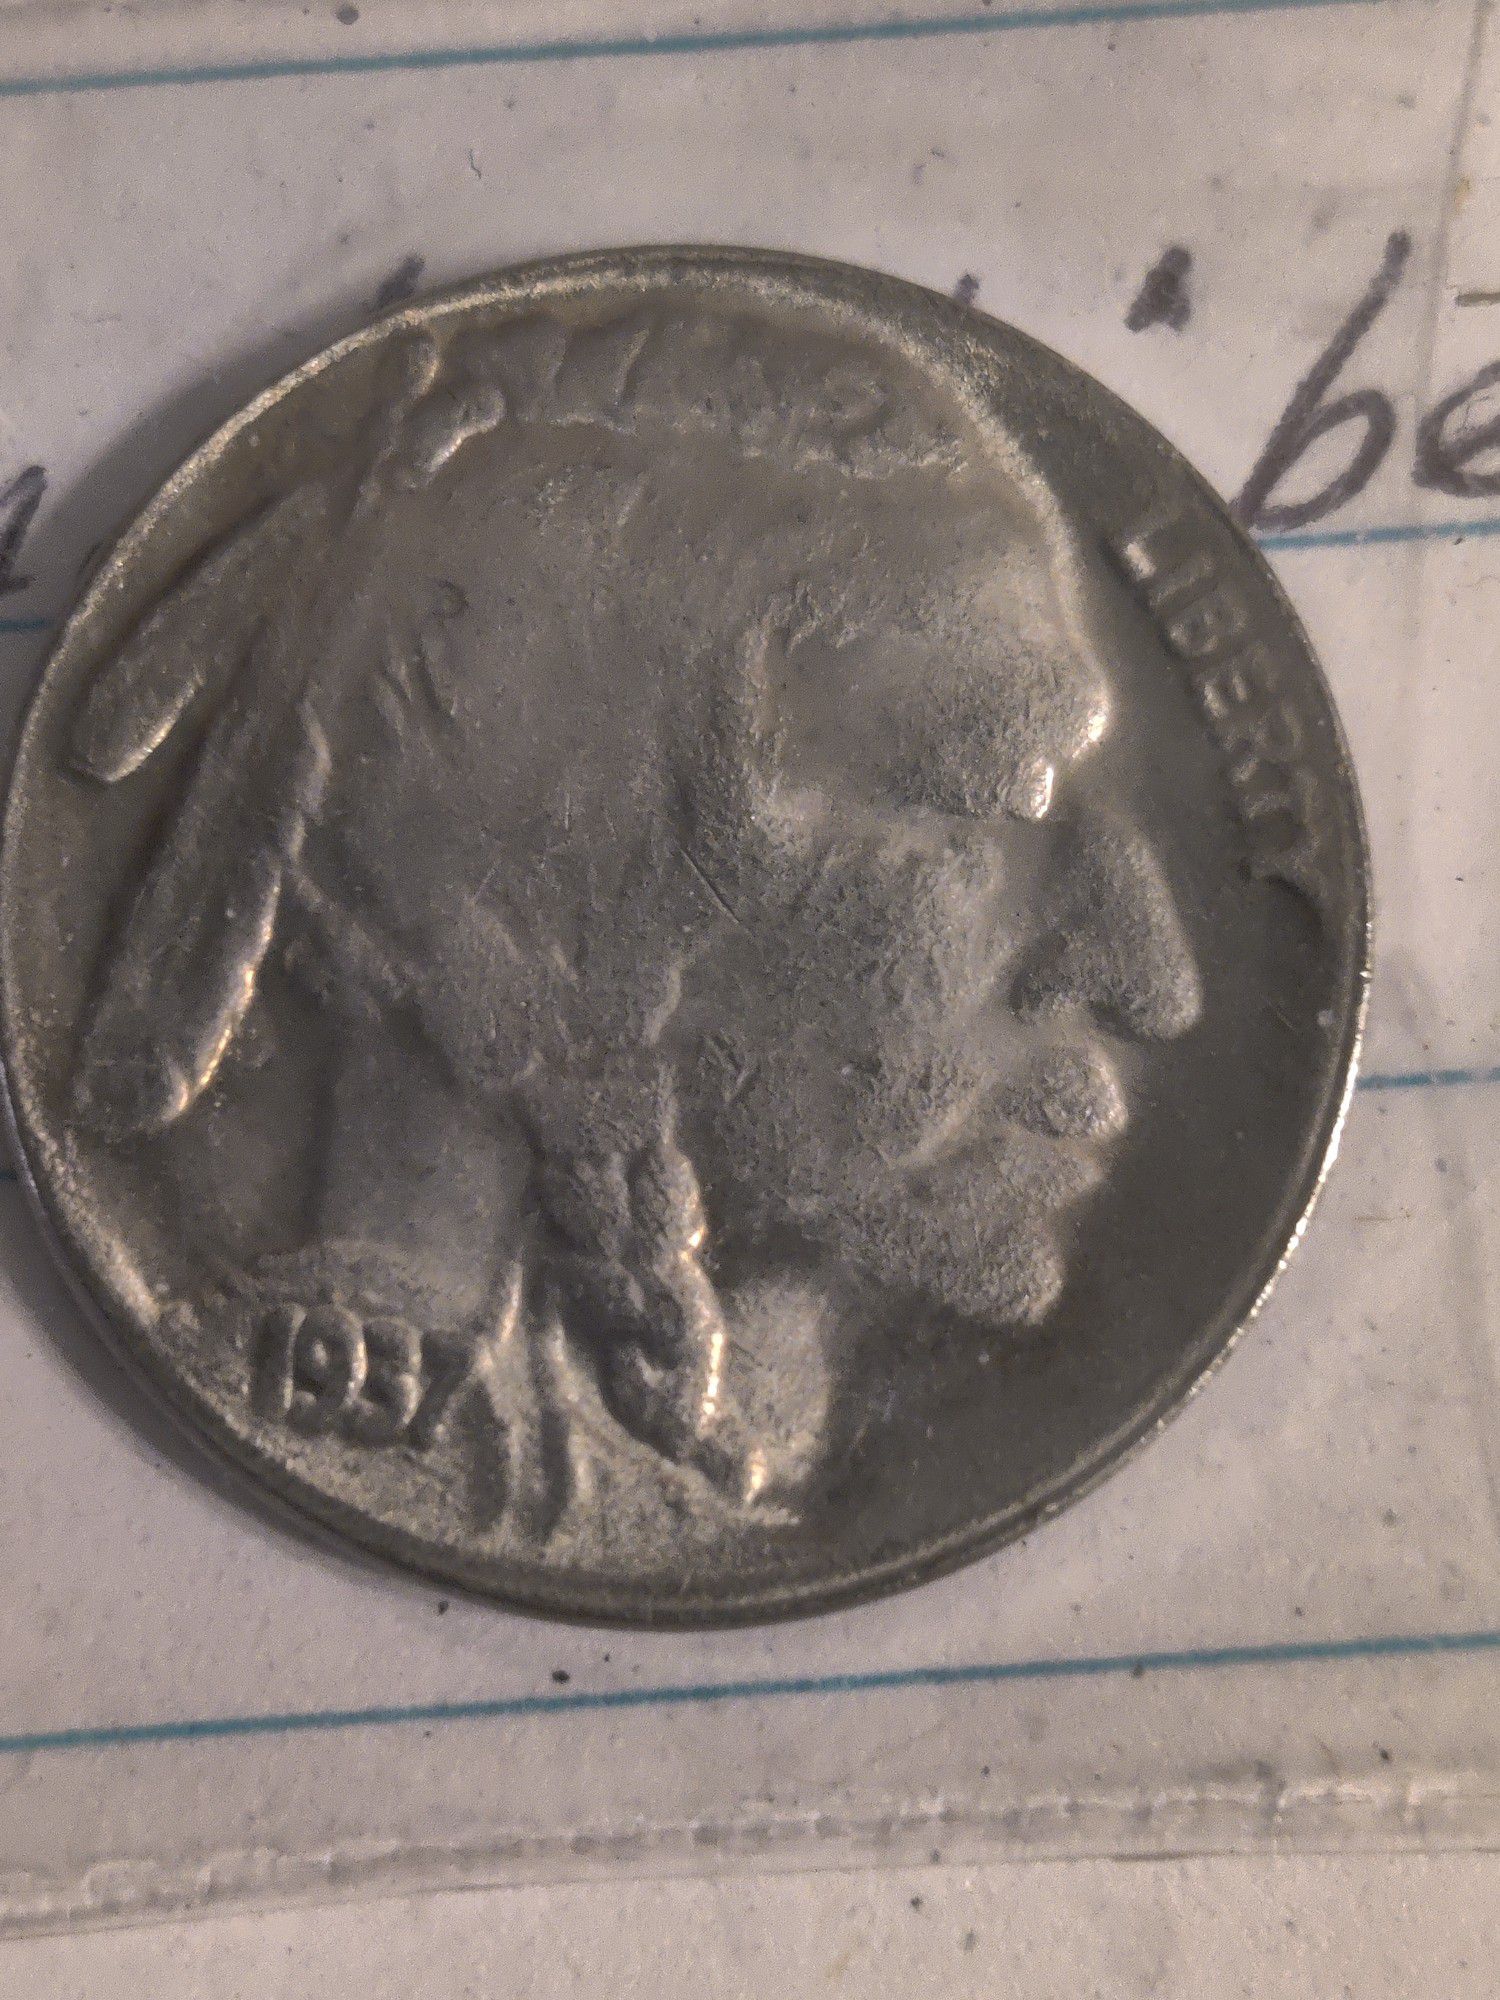 2 1937 Buffalo head nickels